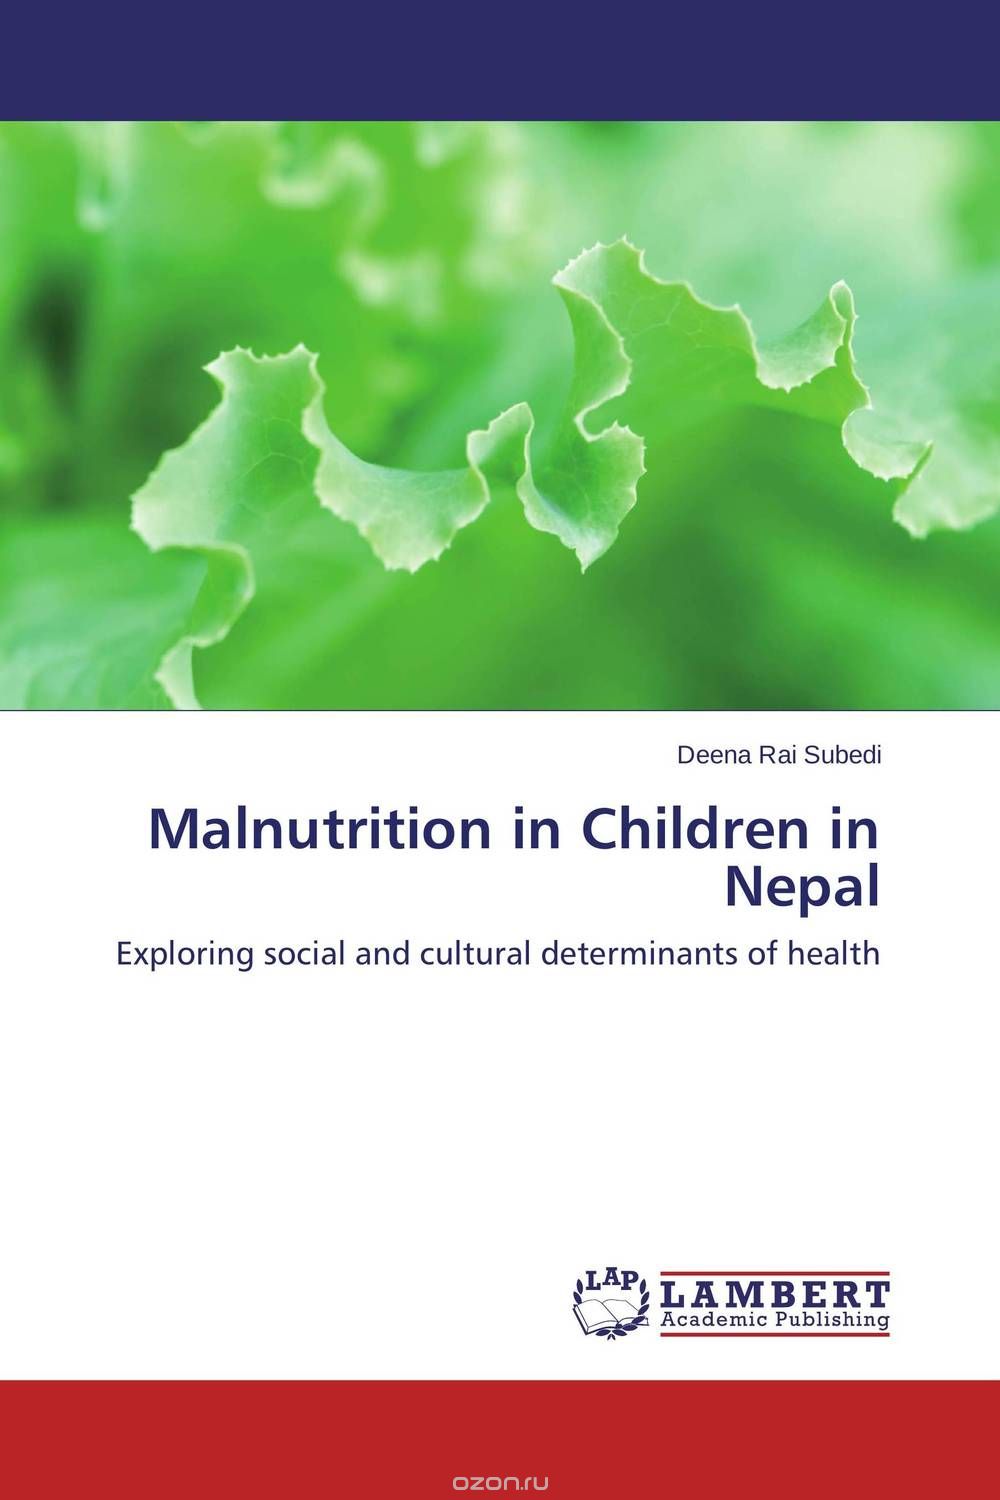 Скачать книгу "Malnutrition in Children in Nepal"